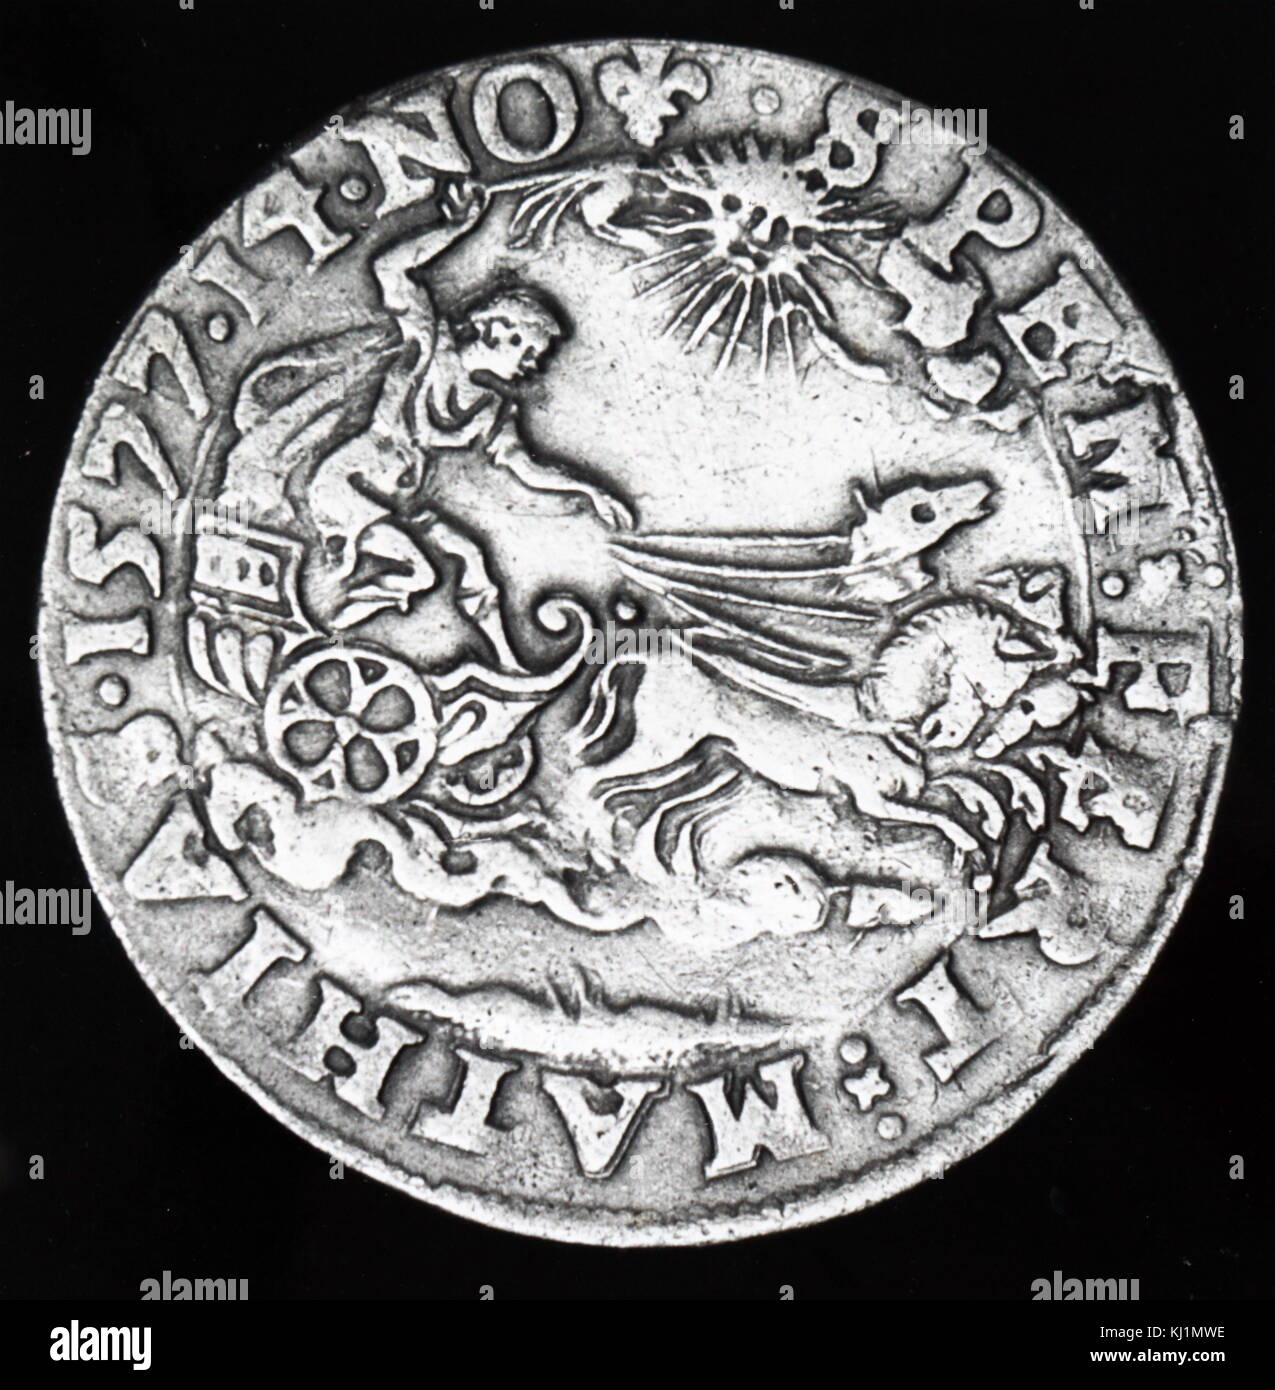 Grabado representando una medalla golpeó a conmemorar el gran cometa de 1596. Fecha del siglo XVI. Foto de stock